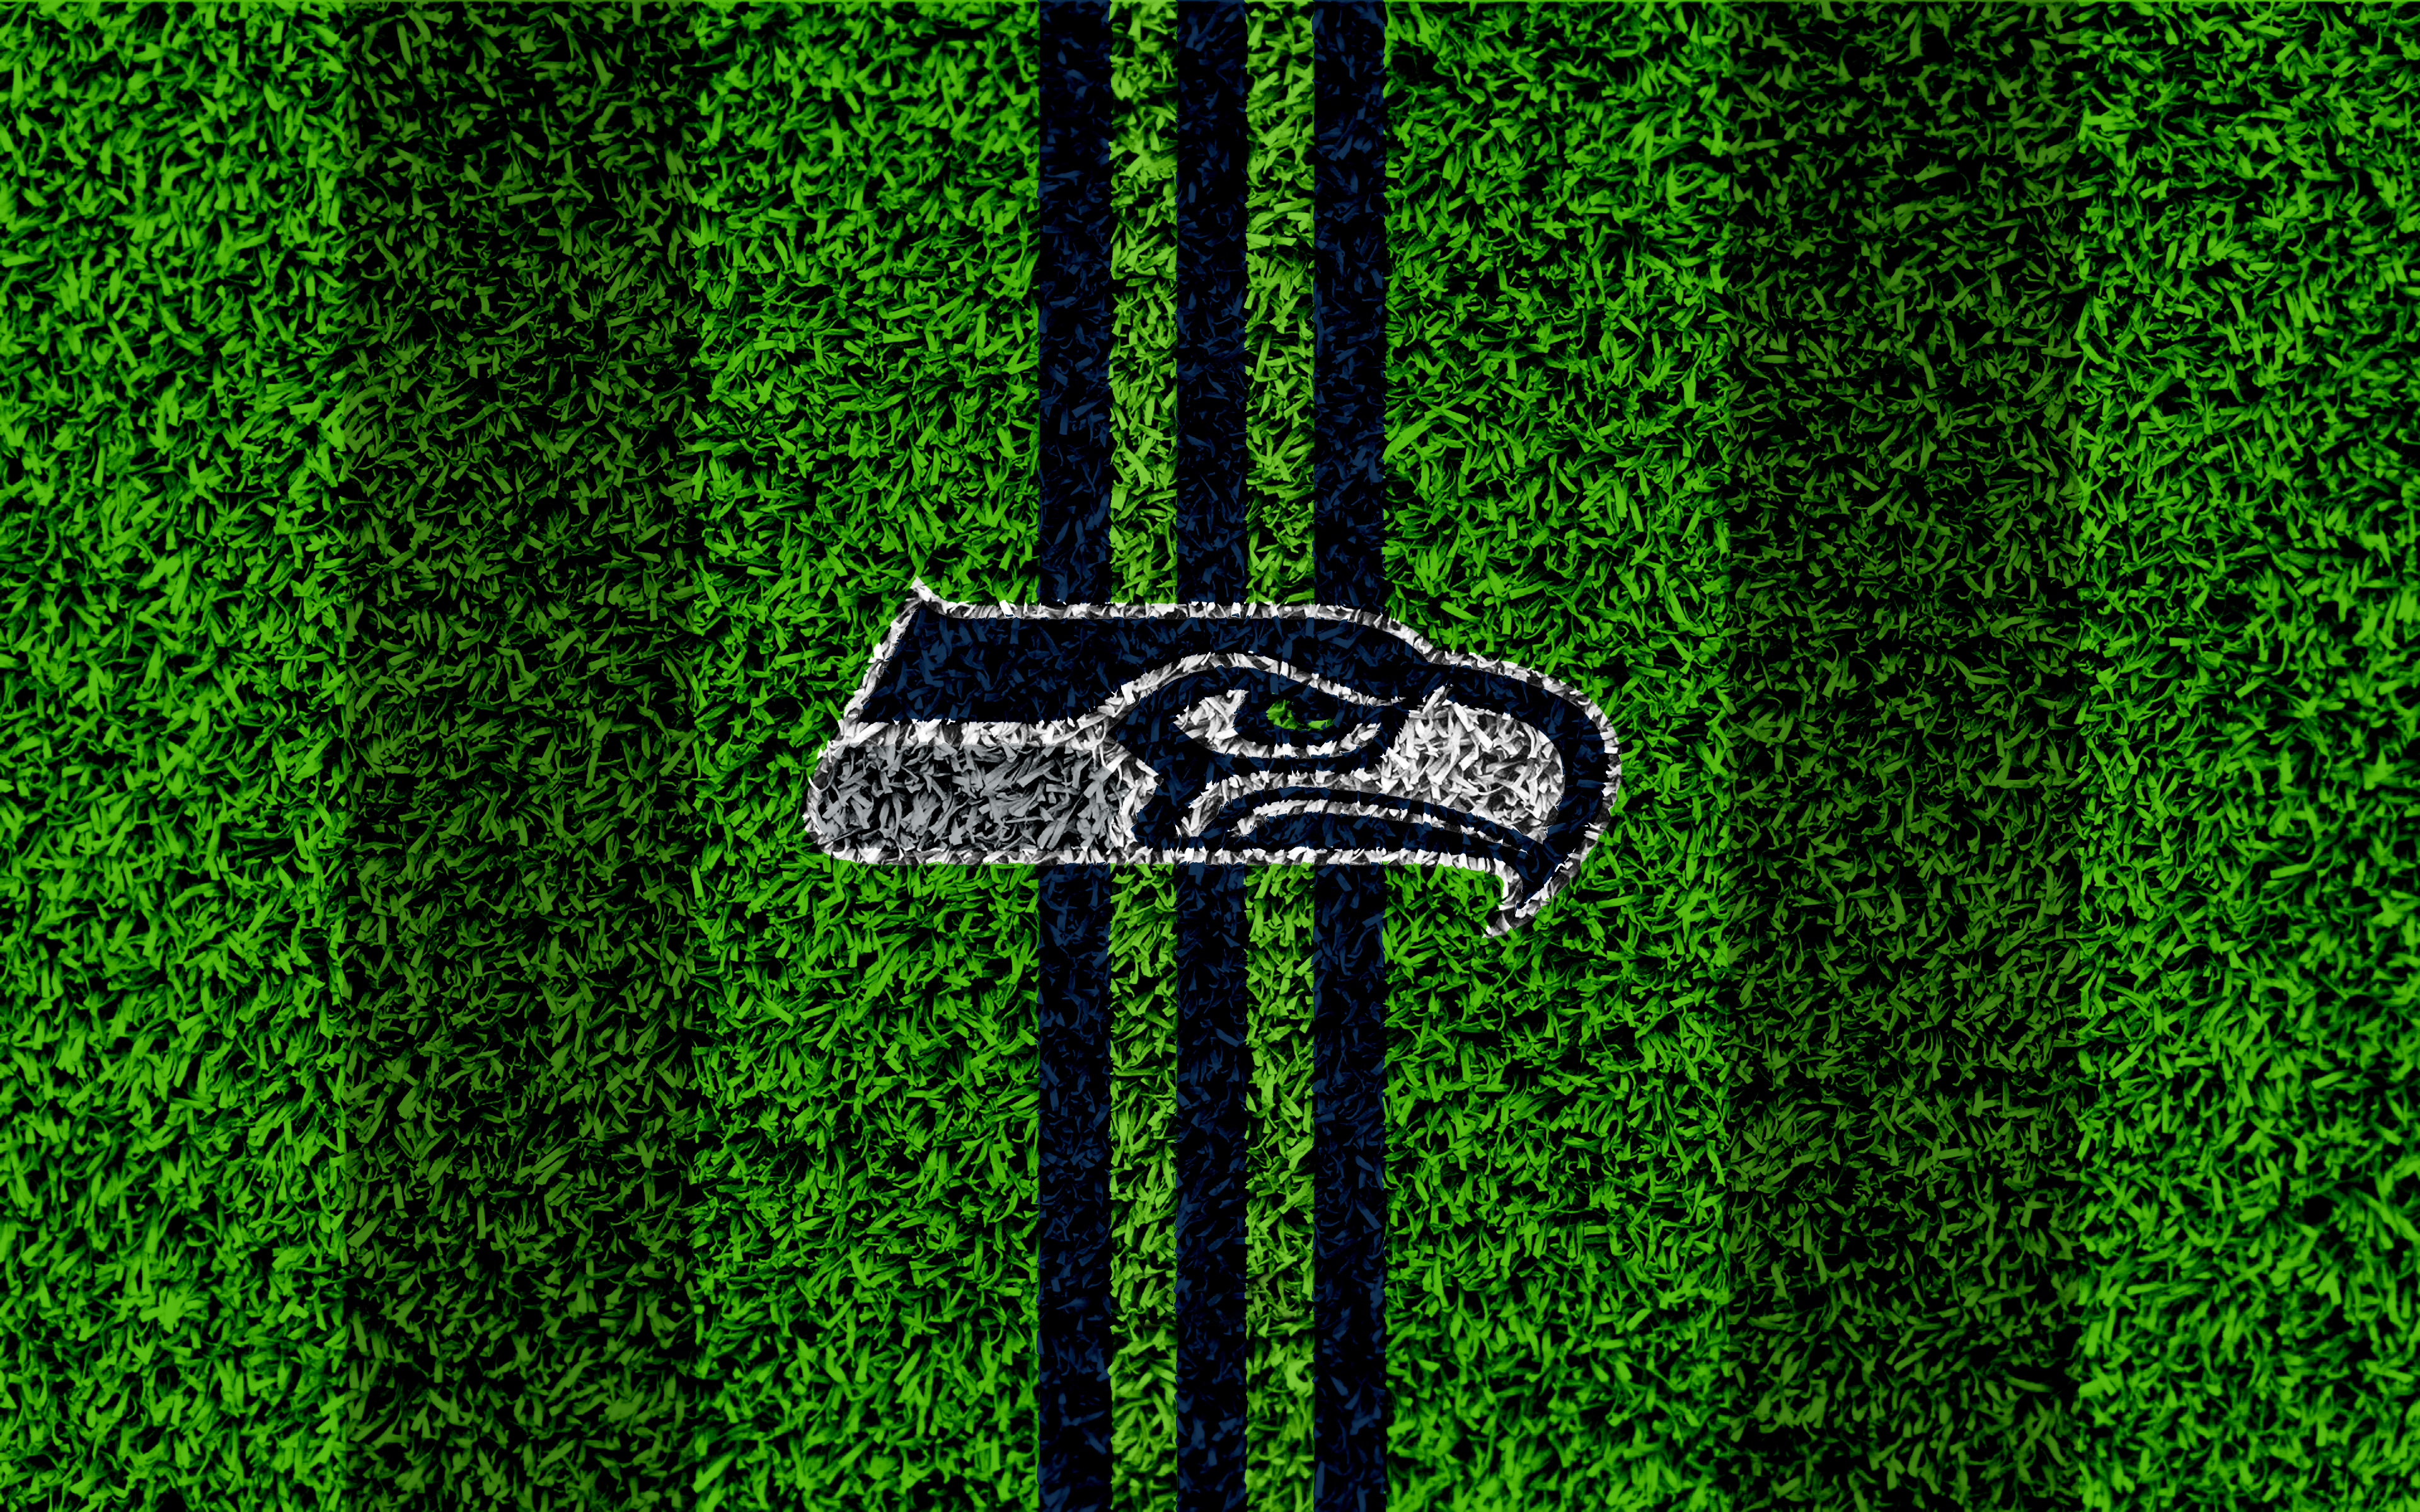 Emblem Logo Nfl Seattle Seahawks 3840x2400